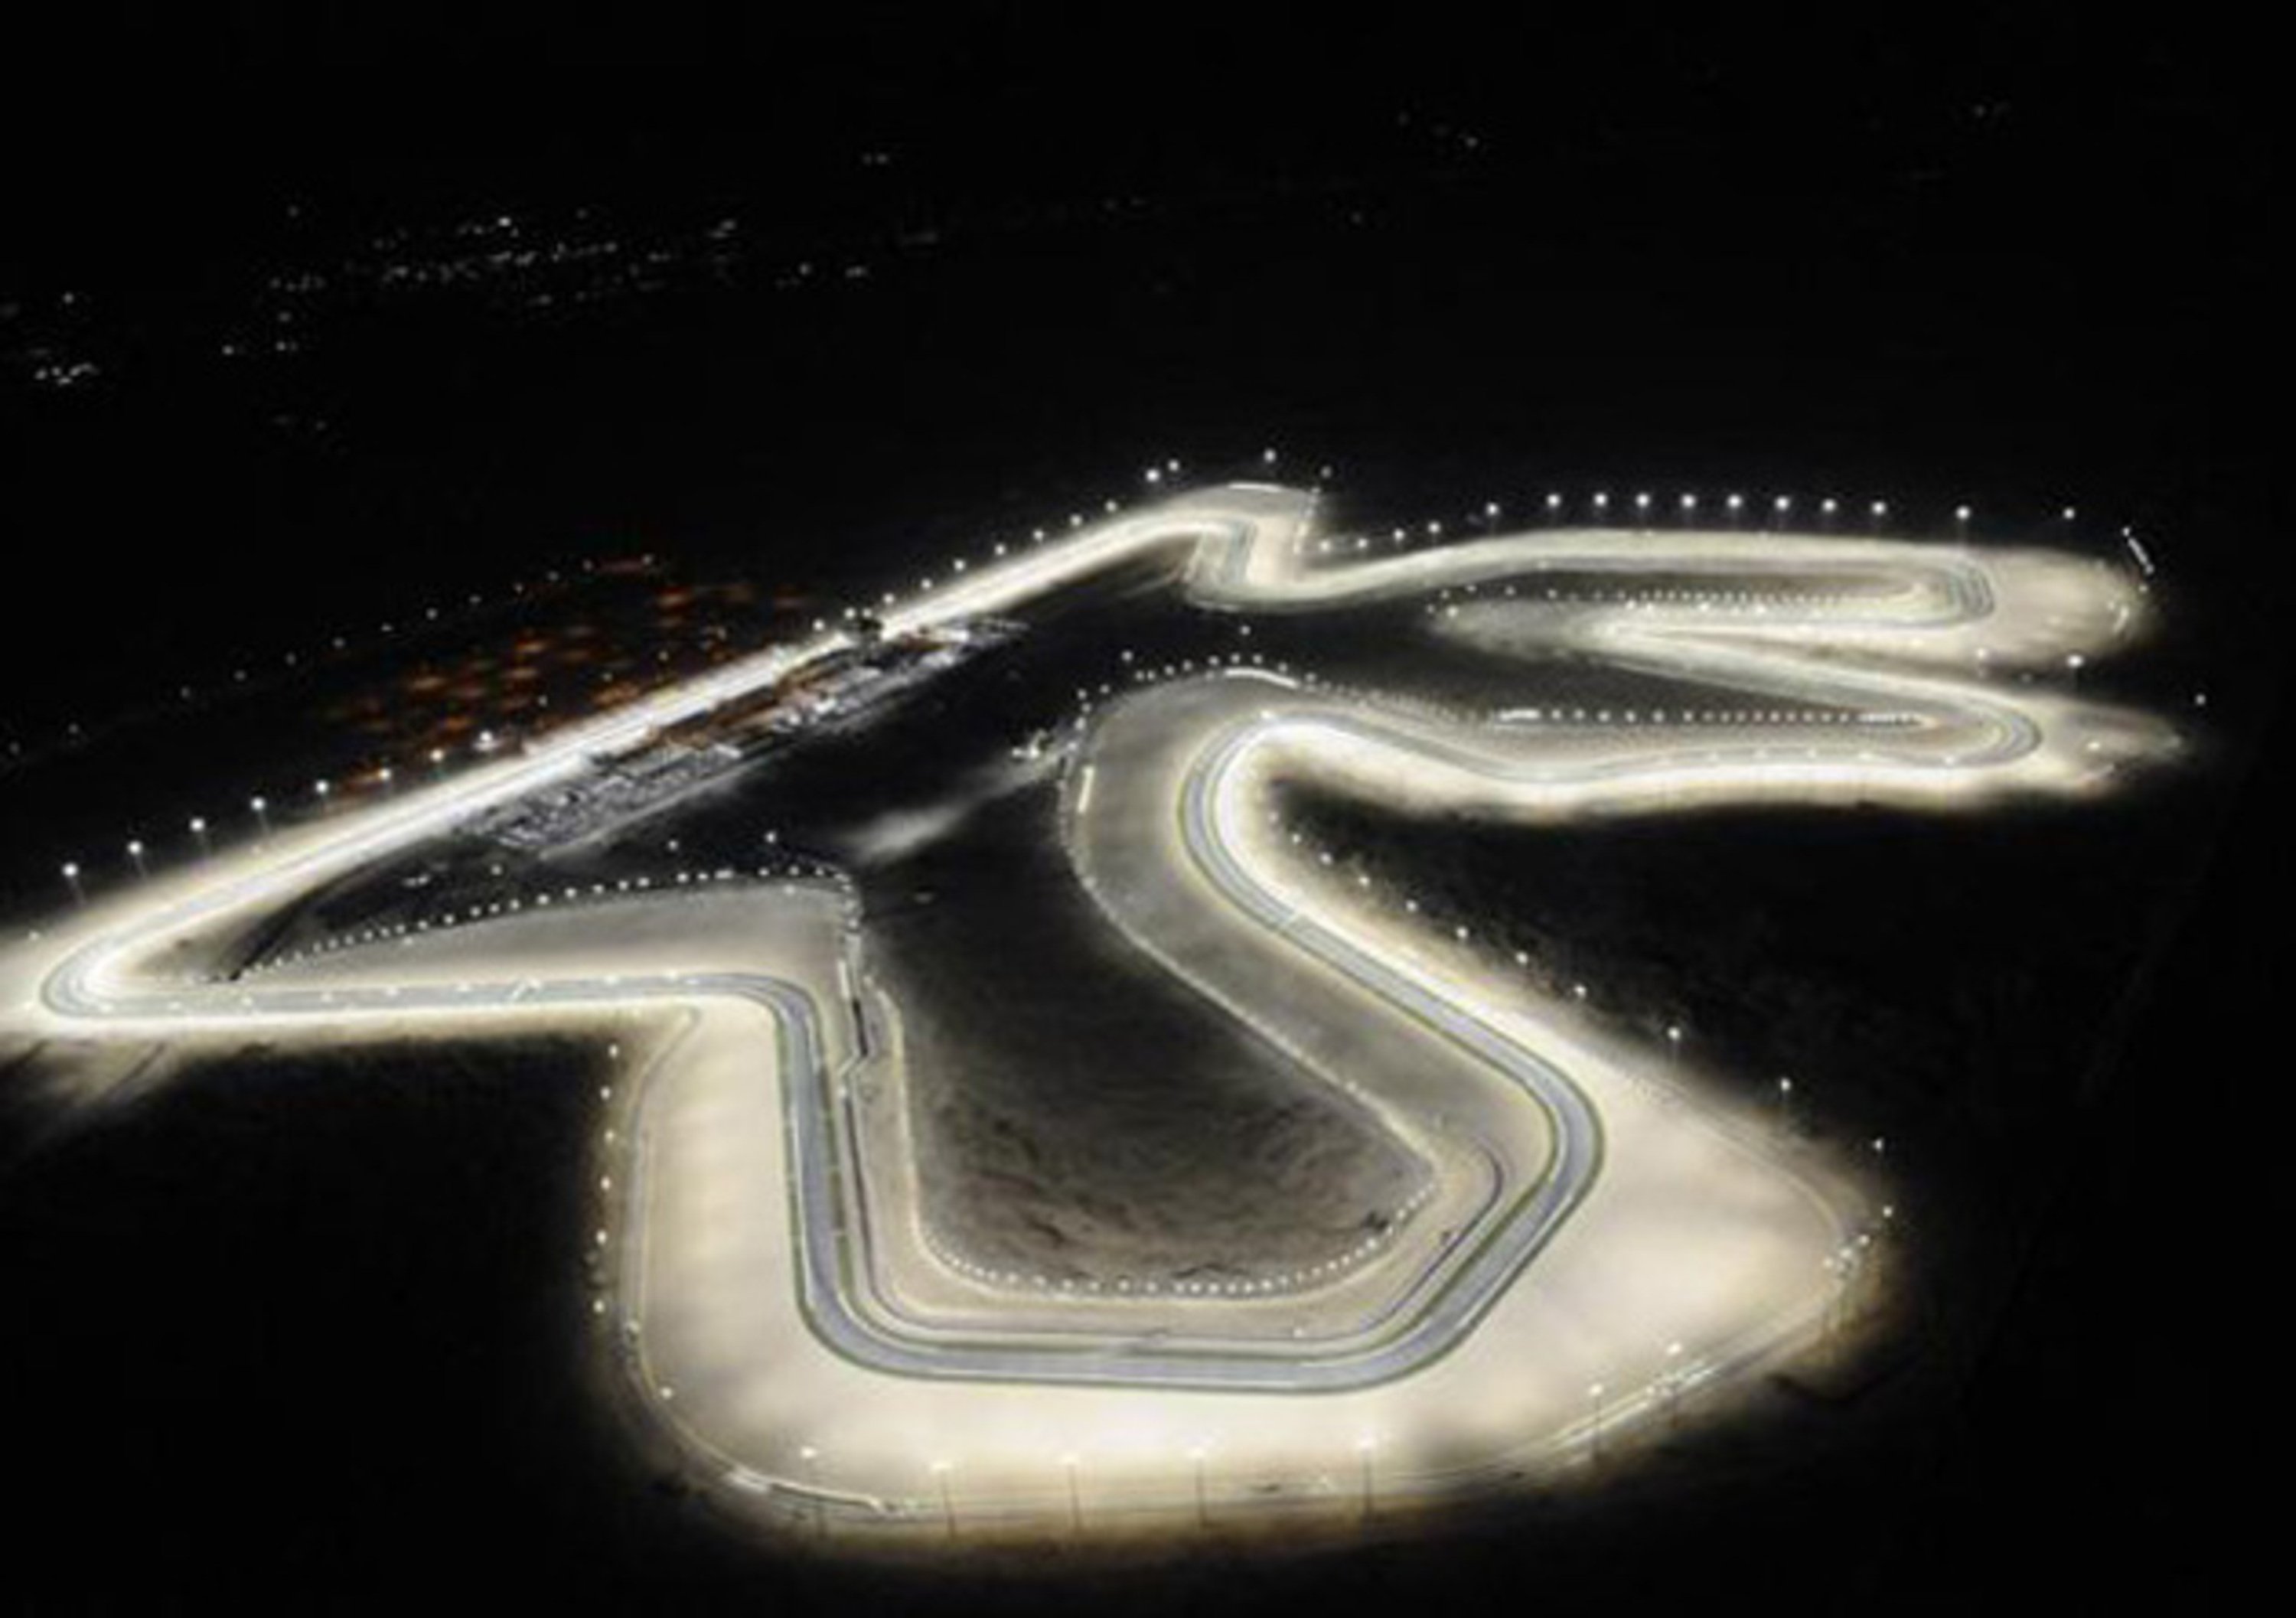 Quattro giornate per il Gran Premio del Qatar